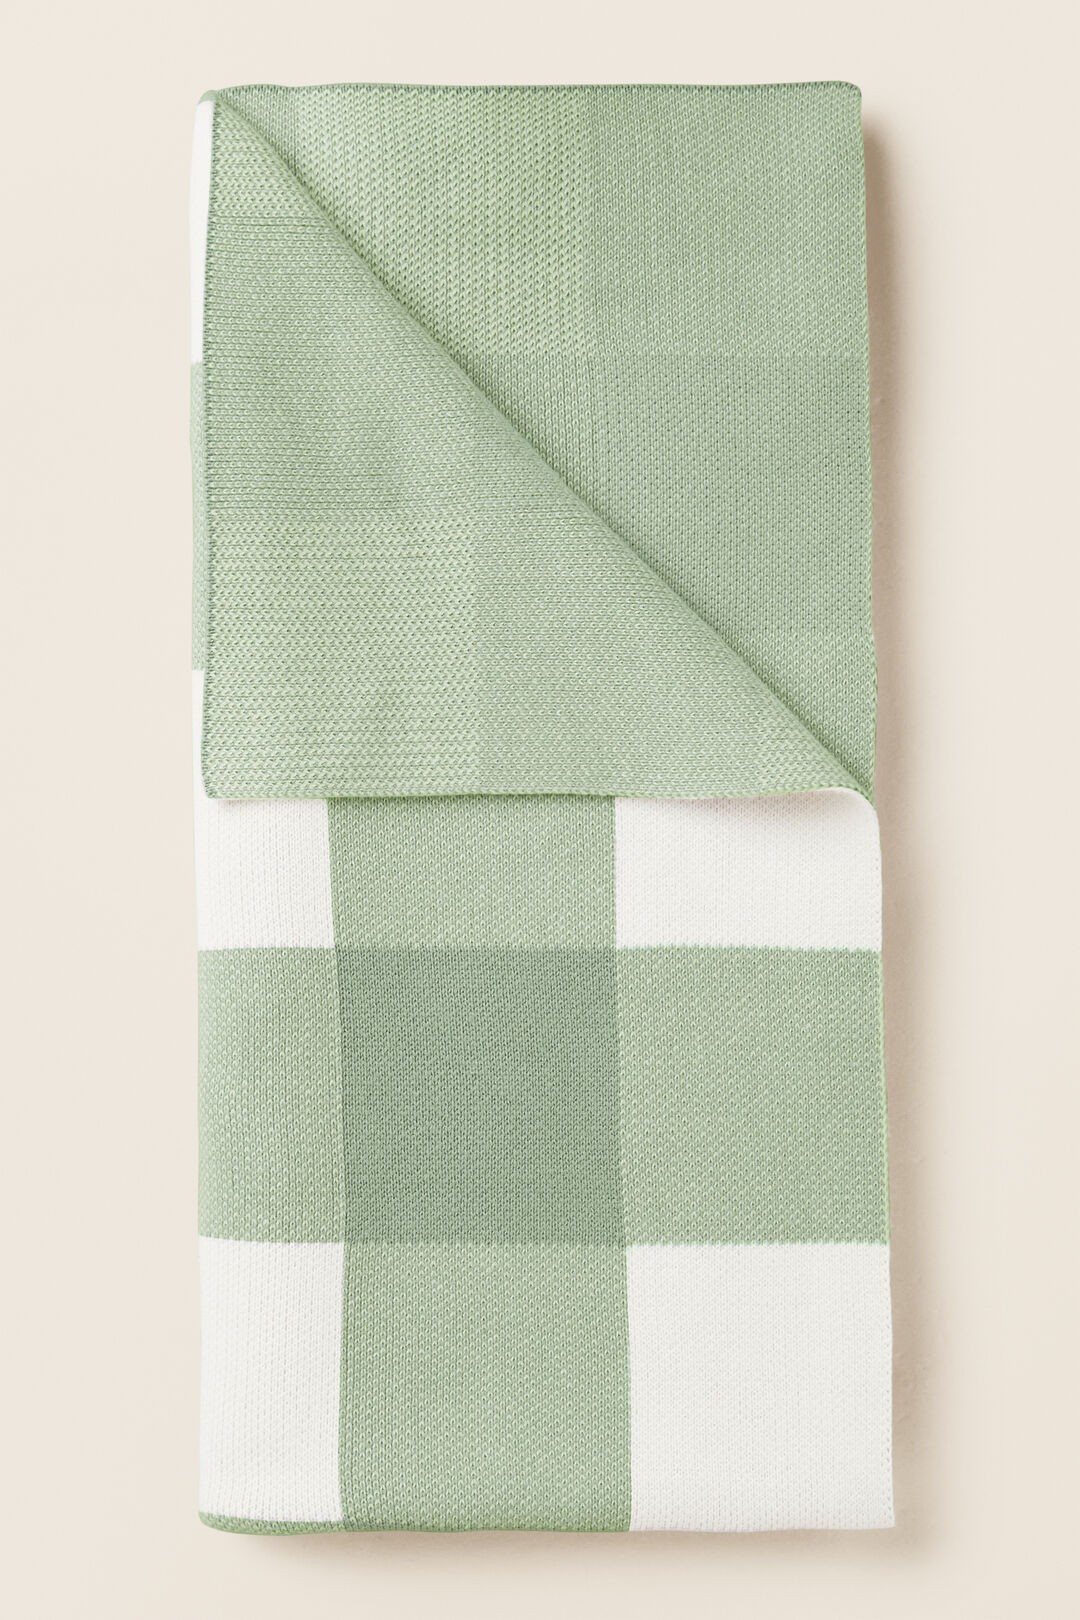 Gingham Knit Blanket  Fern  hi-res